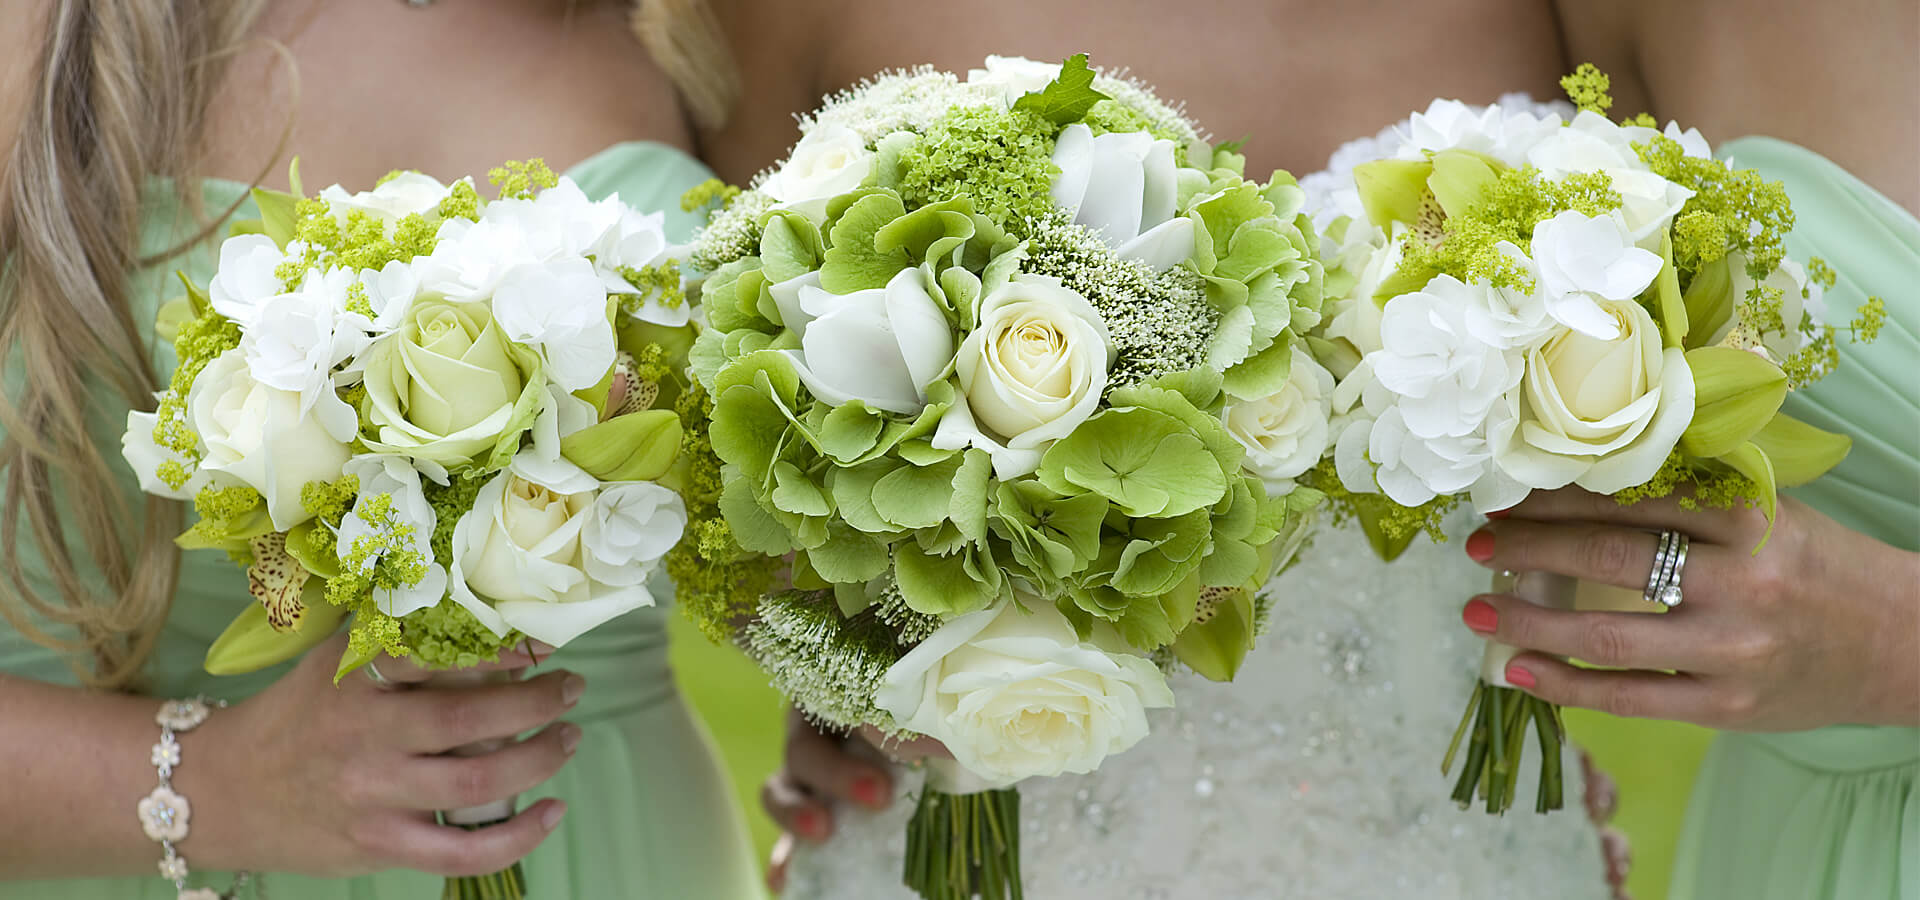 Свадьба в зеленом цвете: секреты проведения